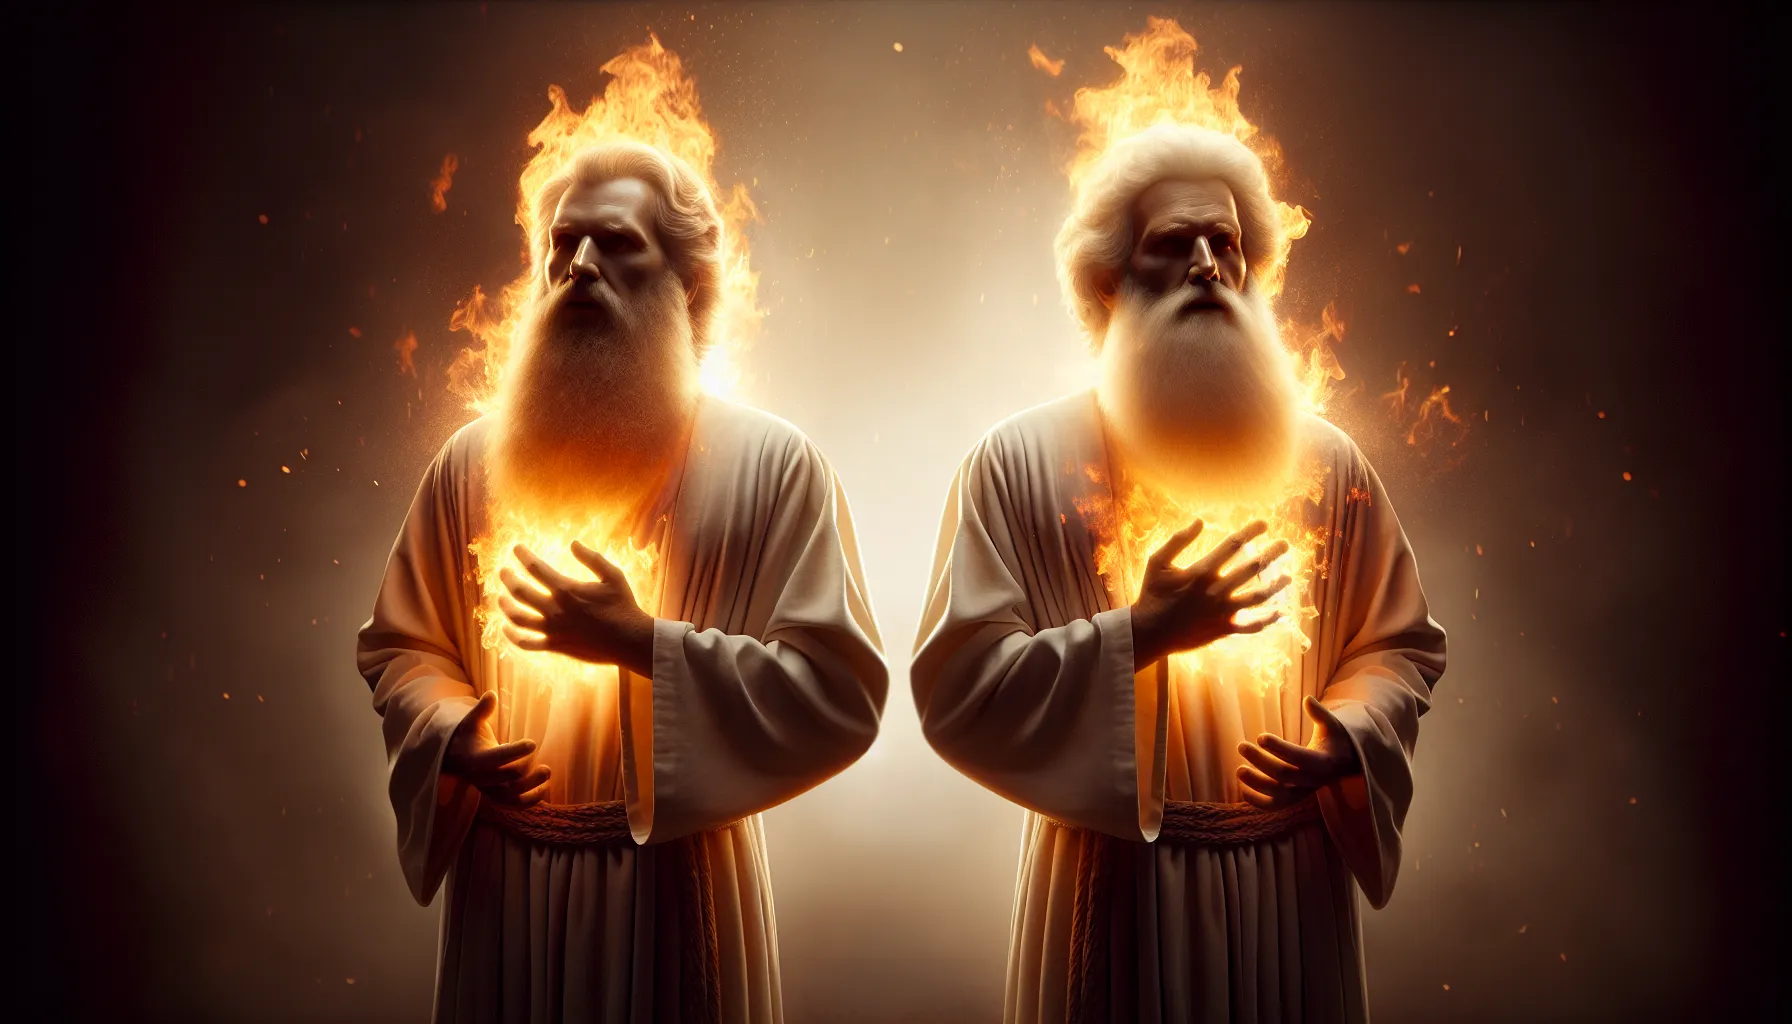 Representación artística de los dos Testigos del Apocalipsis de acuerdo a la interpretación bíblica